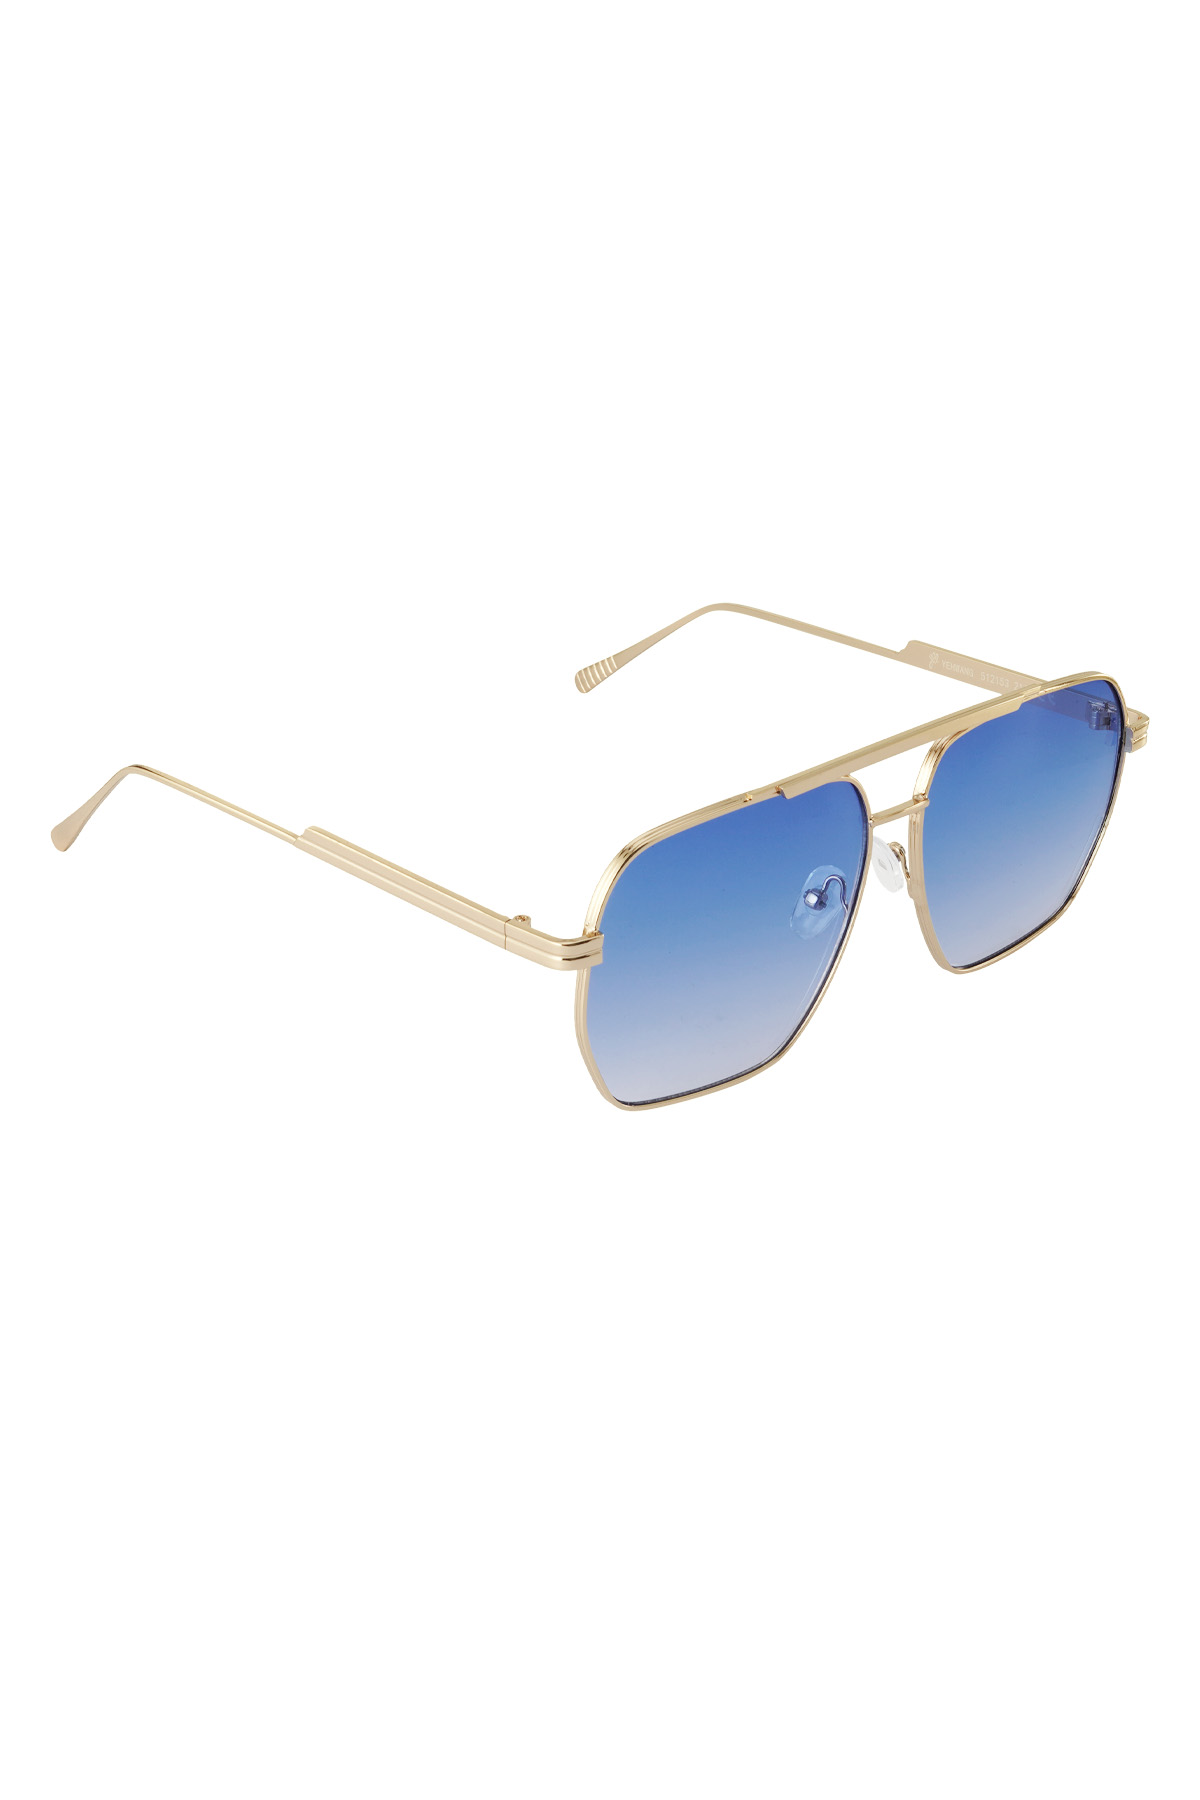 Sommersonnenbrille aus Metall – Blau und Gold h5 